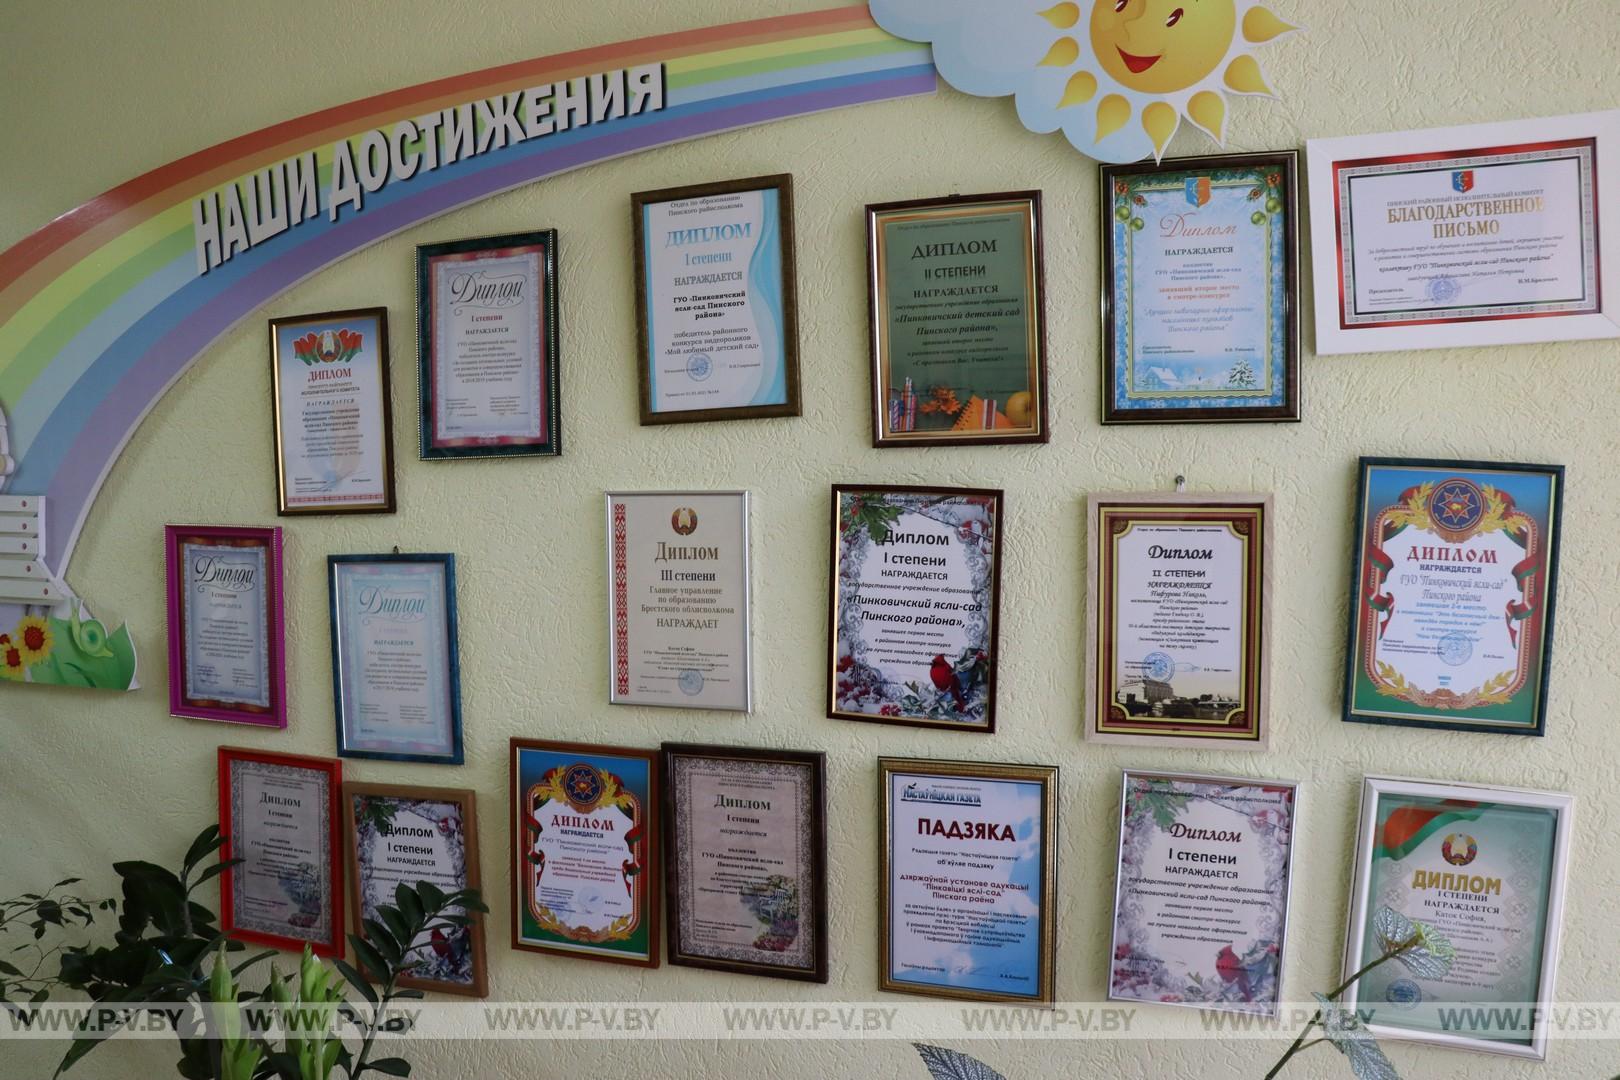 Пинковичский детский сад признан лучшим в Брестской области